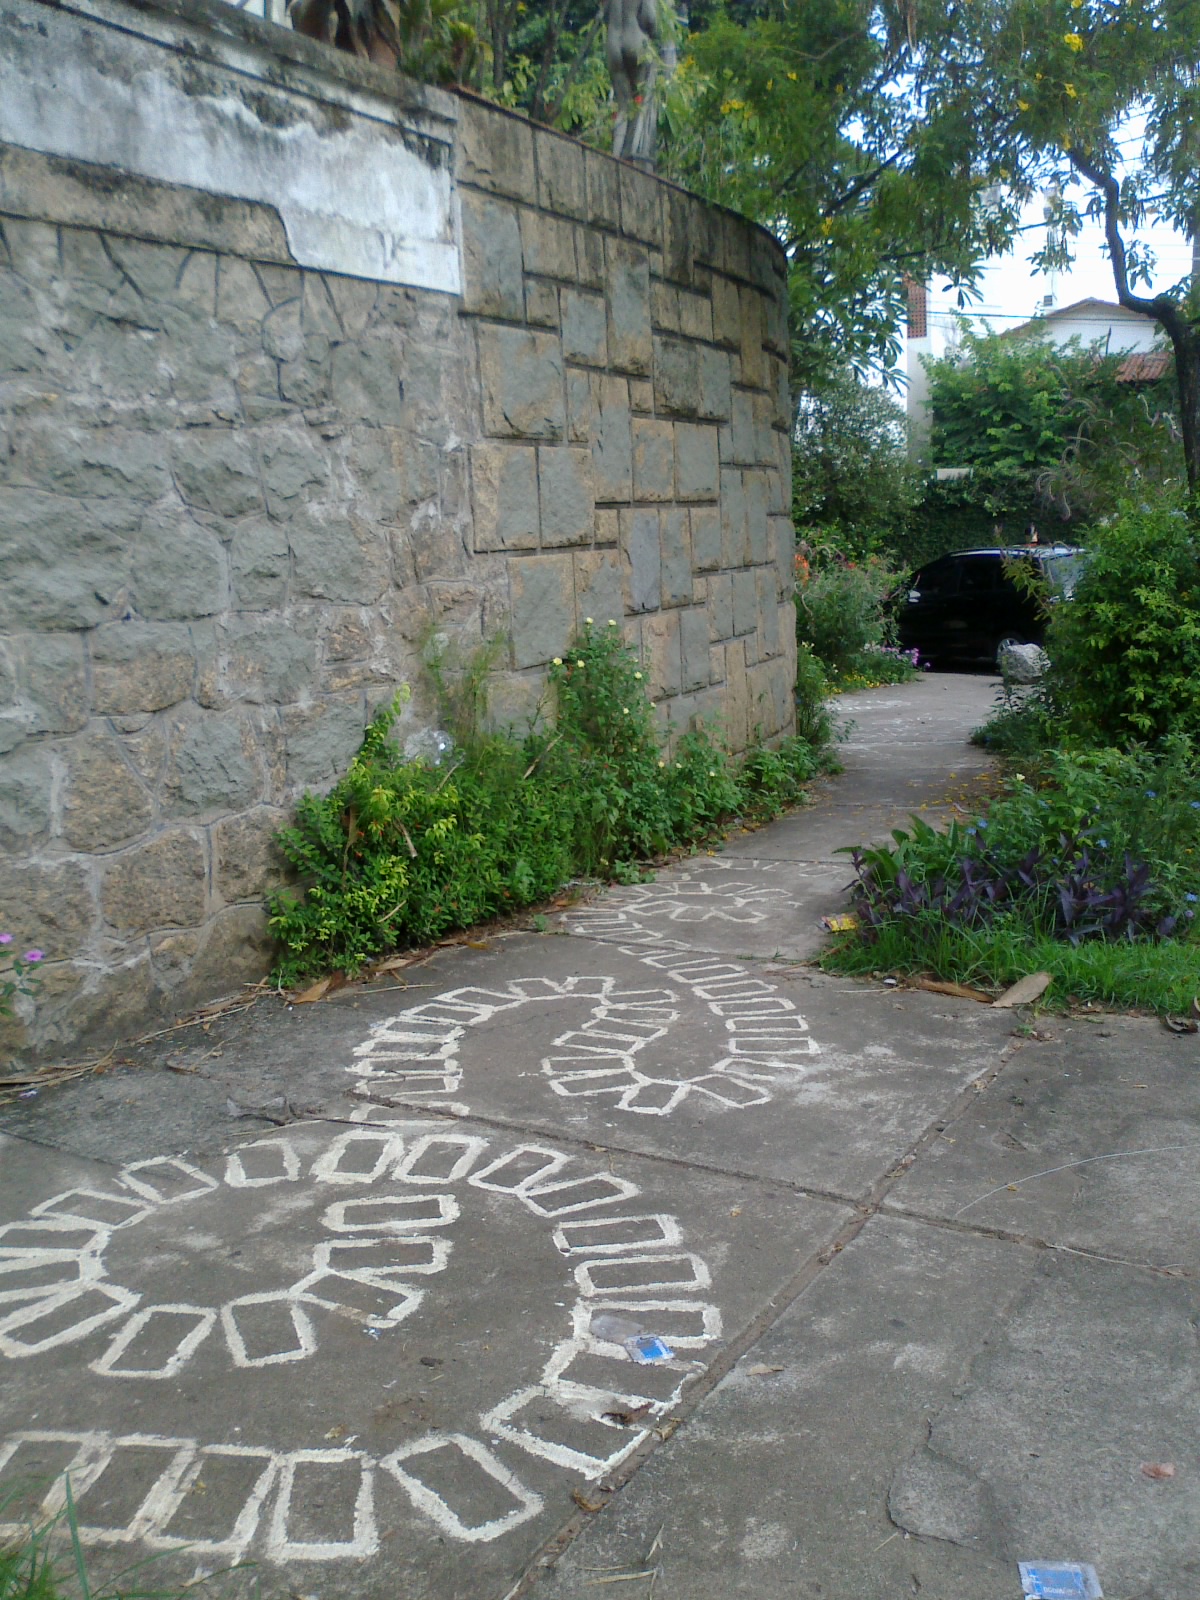  Figura 4 – Calçada em frente à residência do artista. Fotografia da autora.